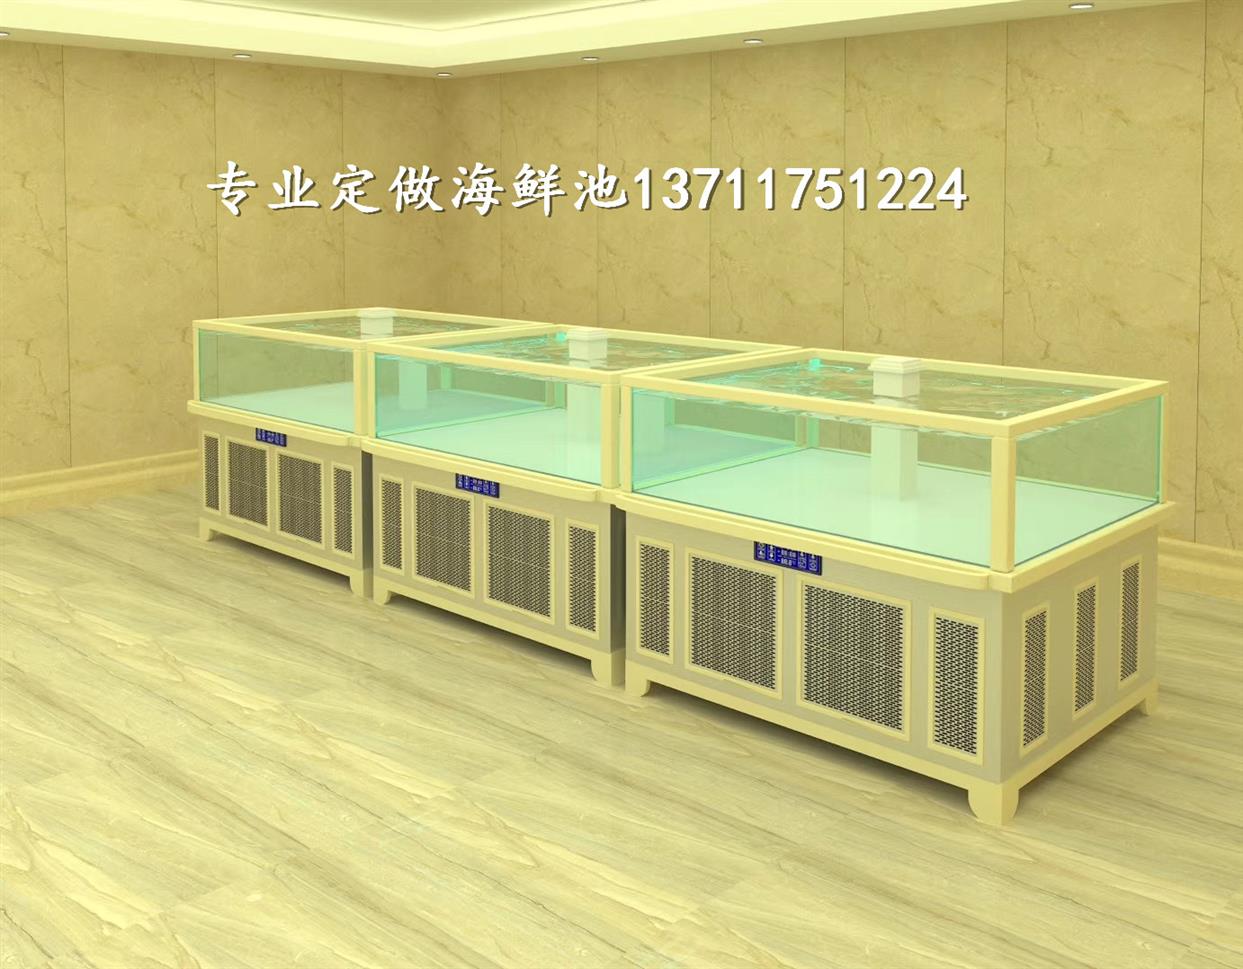 广州芩村玻璃海鲜池公司